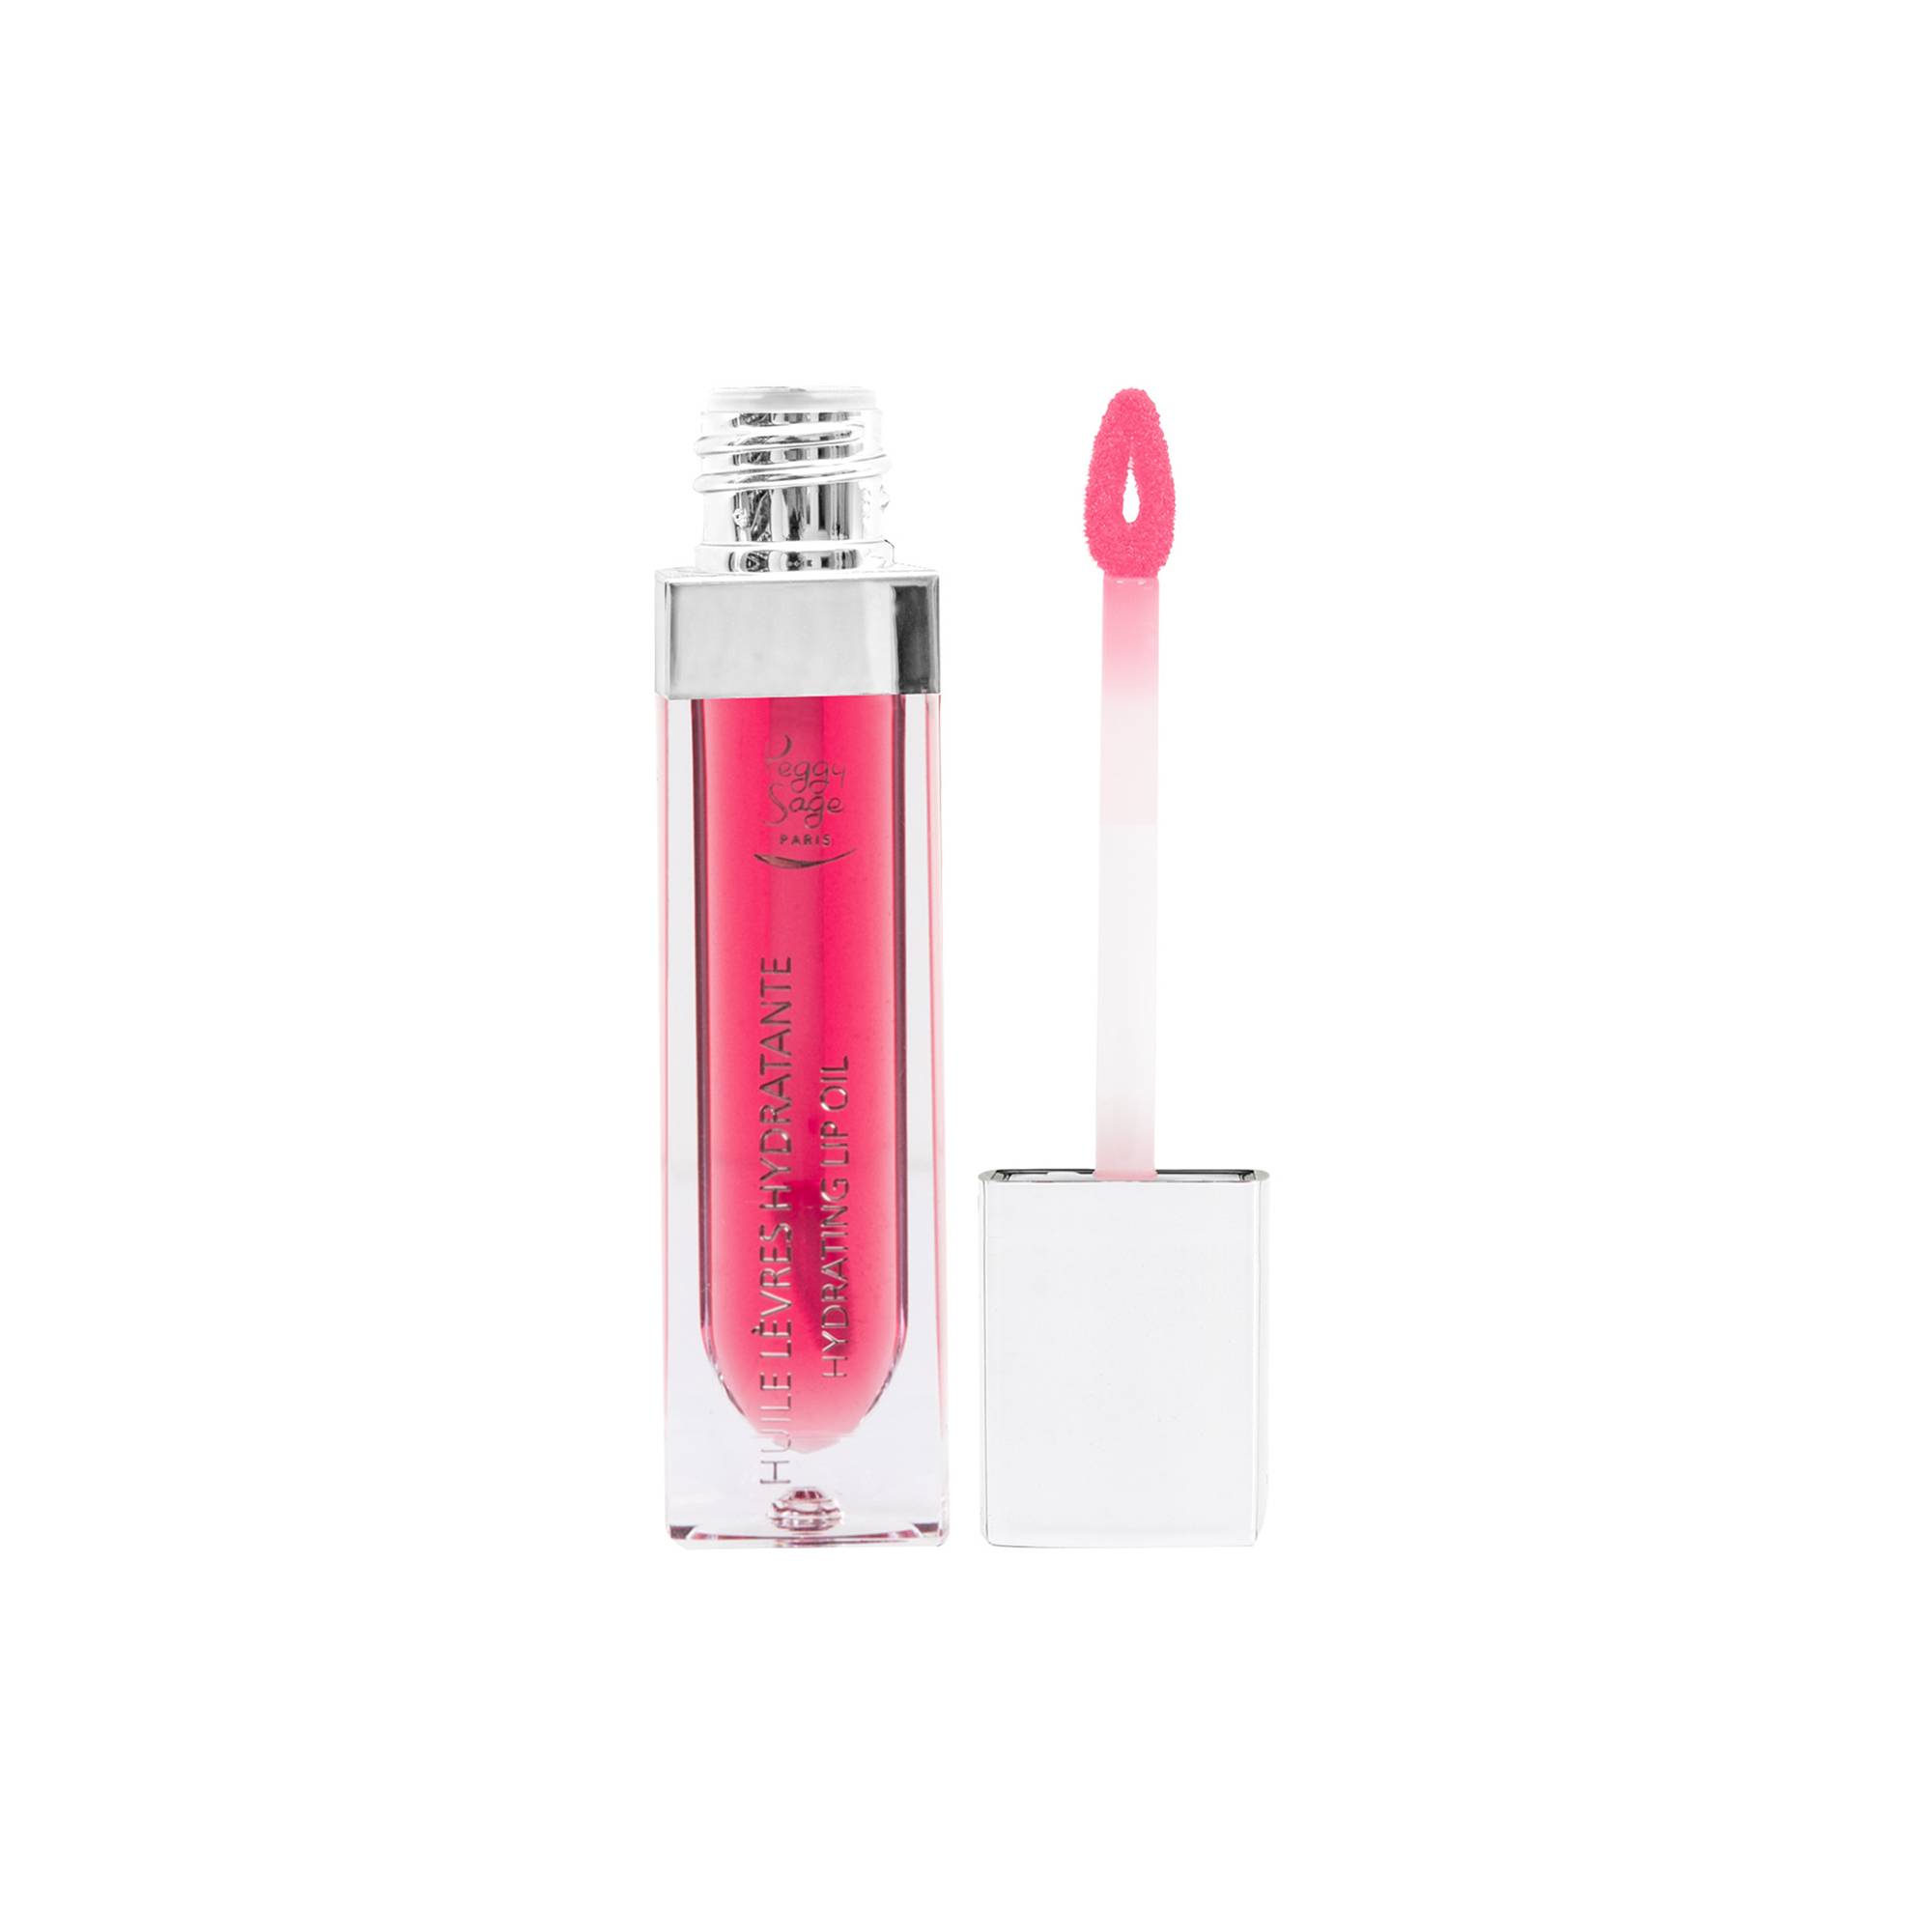 Huile lèvres hydratante - kind pink de la marque Peggy Sage Contenance 6ml - 1